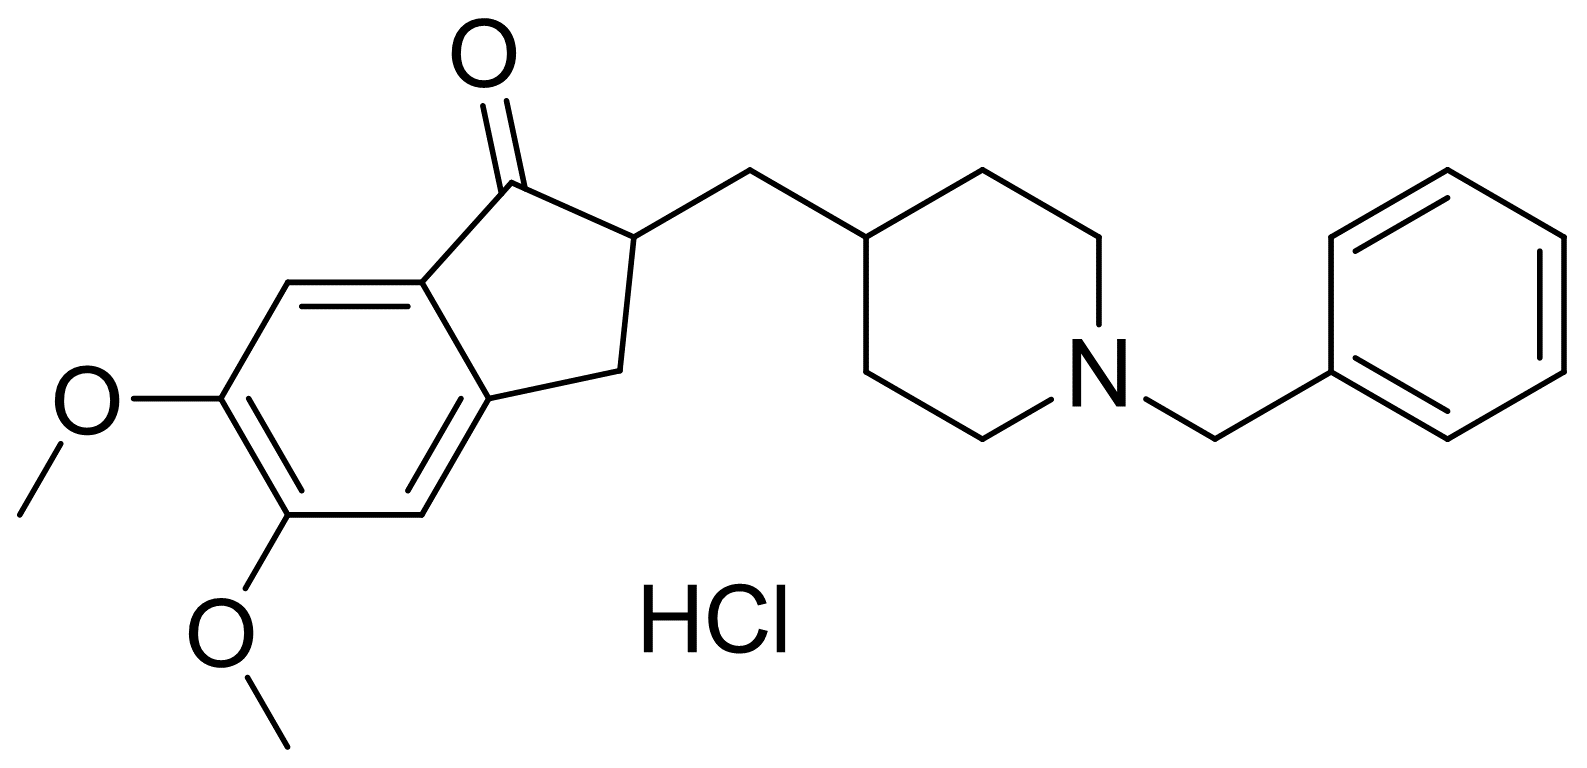 2,3-dihydro-5,6-dimethoxy-2-[[1-(phenylmethyl)-4-piperidinyl]methyl]-1h-inden-1-one hydrochloride